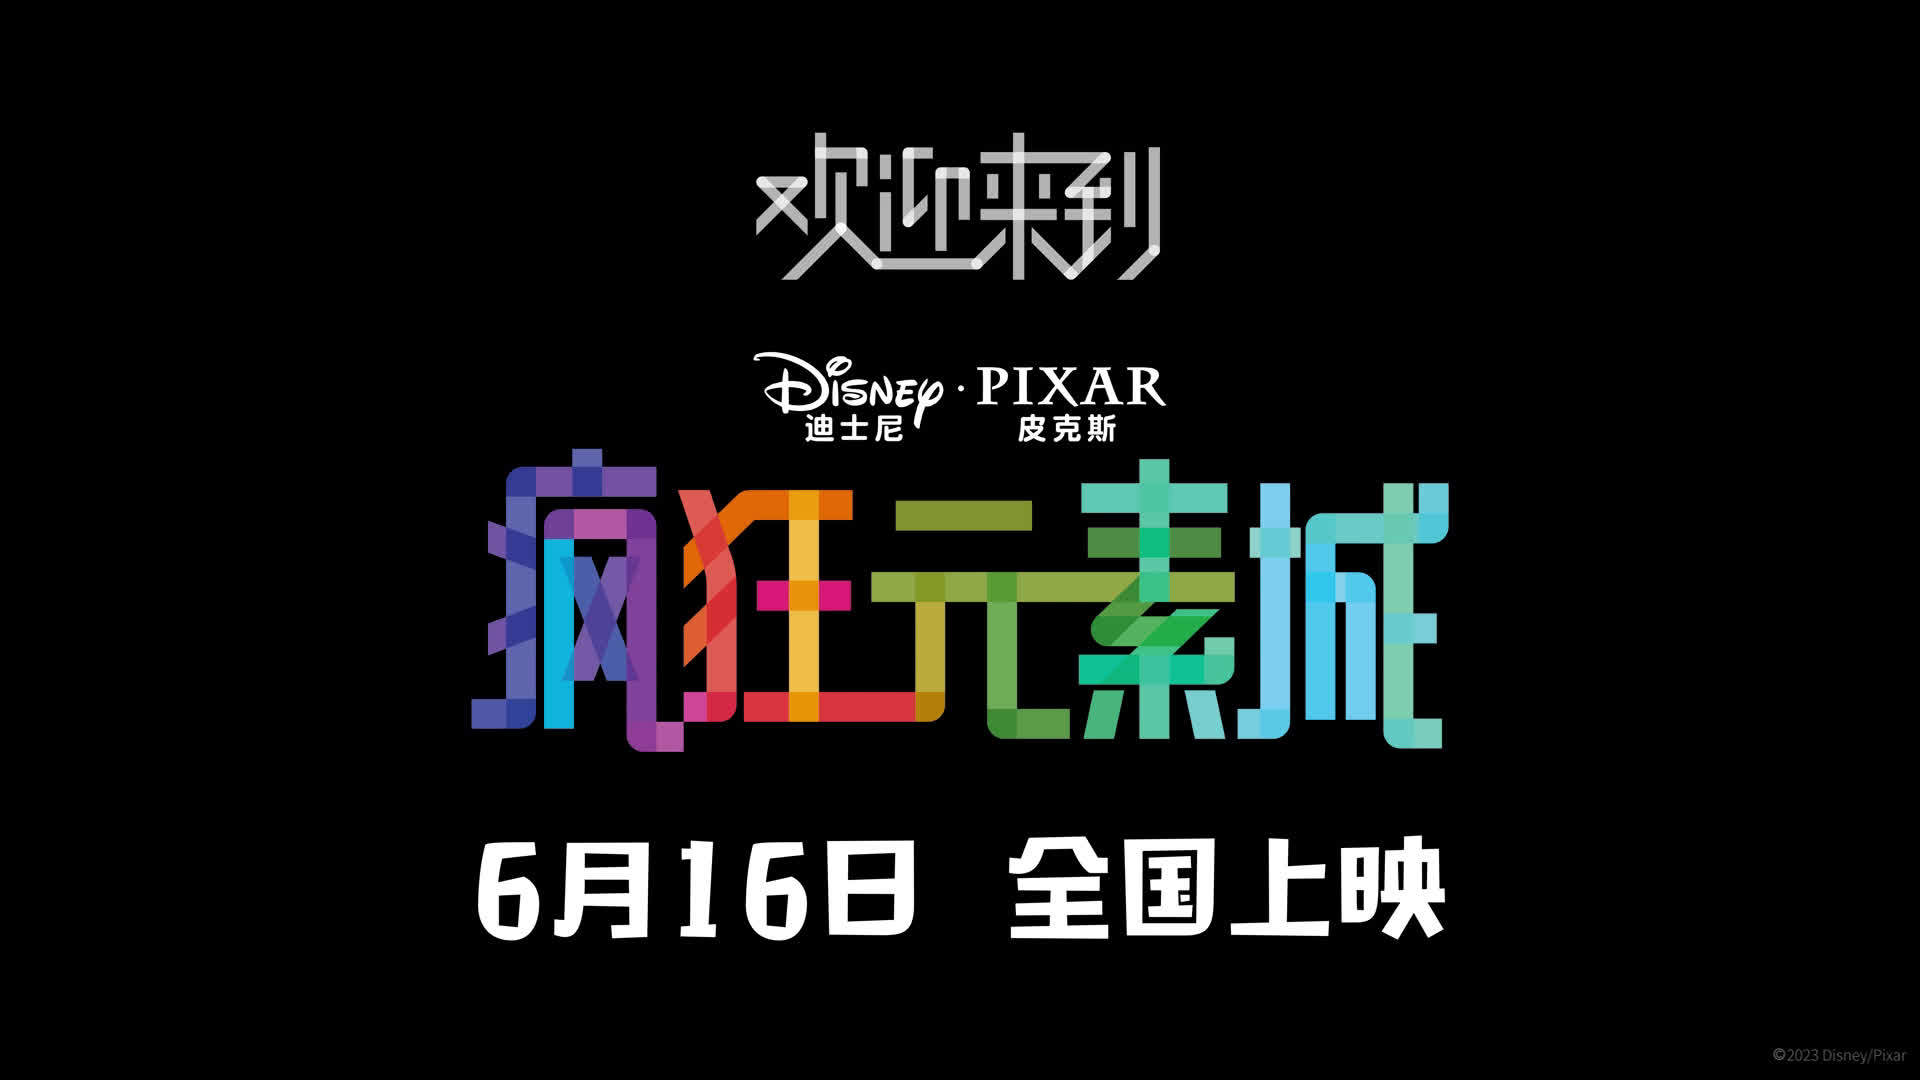 皮克斯动画新片《疯狂元素城​》发布王源演唱的中文主题曲《下个路口》MV